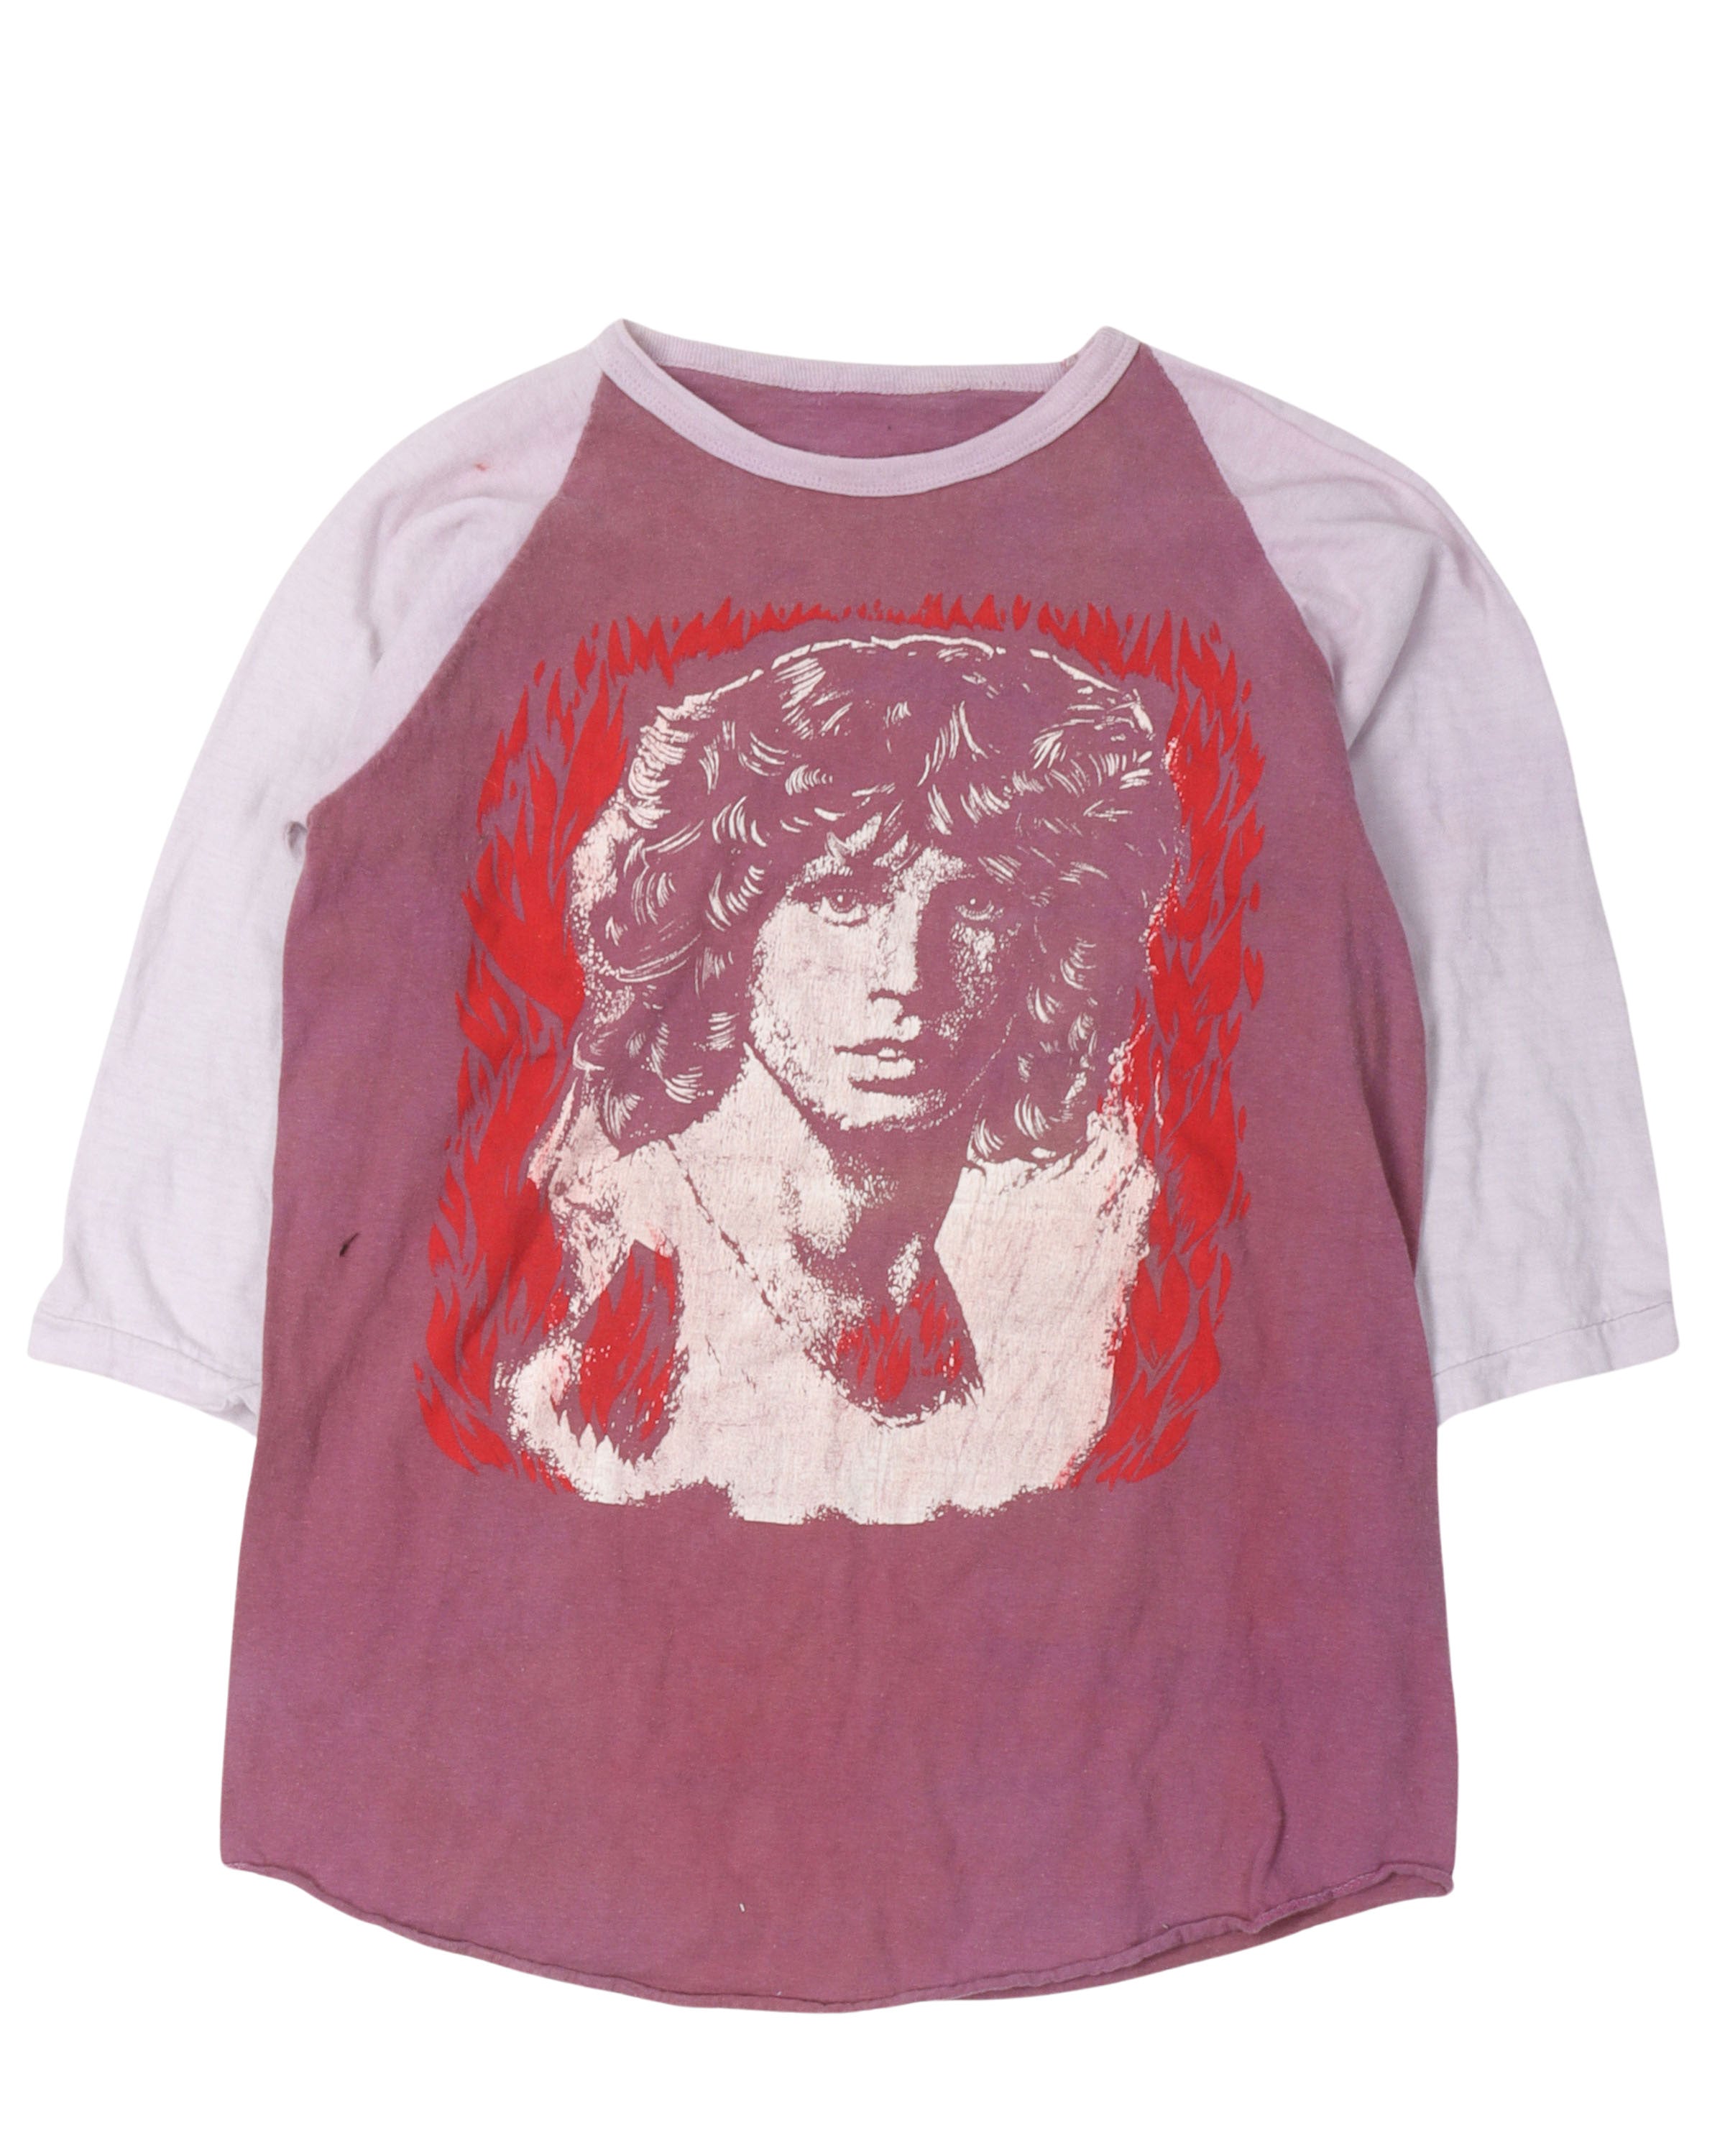 Jim Morrison Ringer T-Shirt